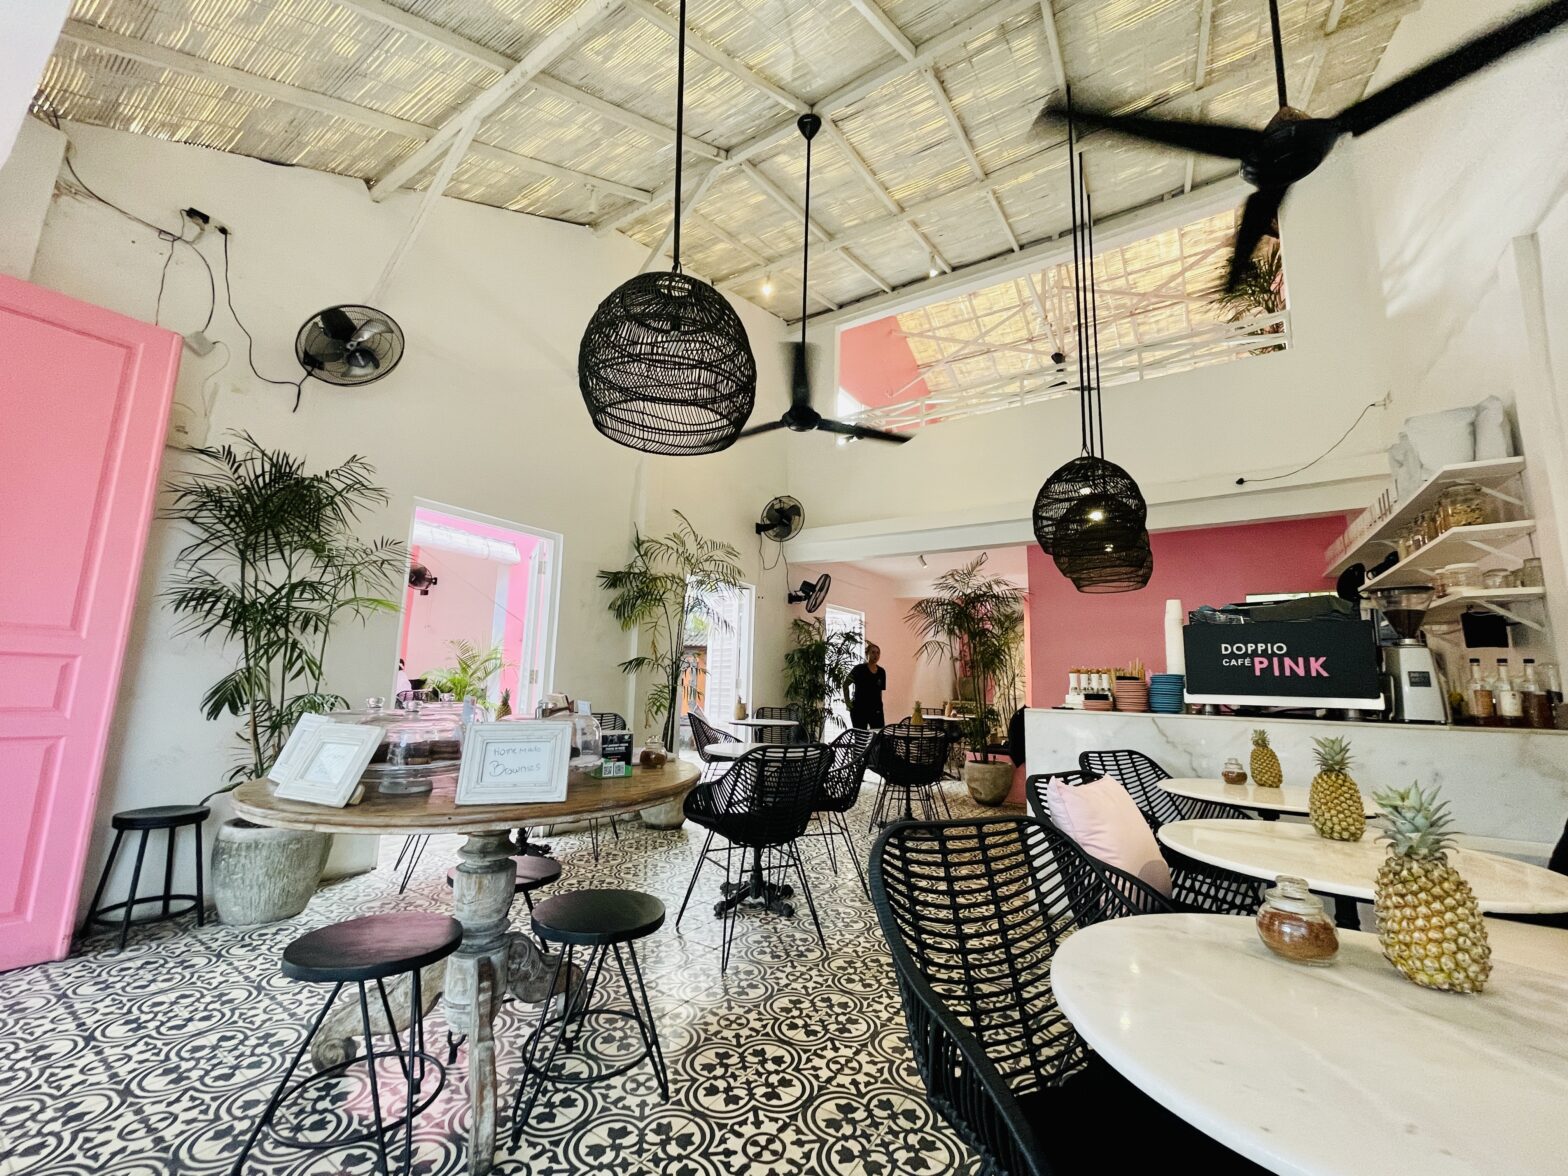 Inside Doppio Cafe Pink in Bali.